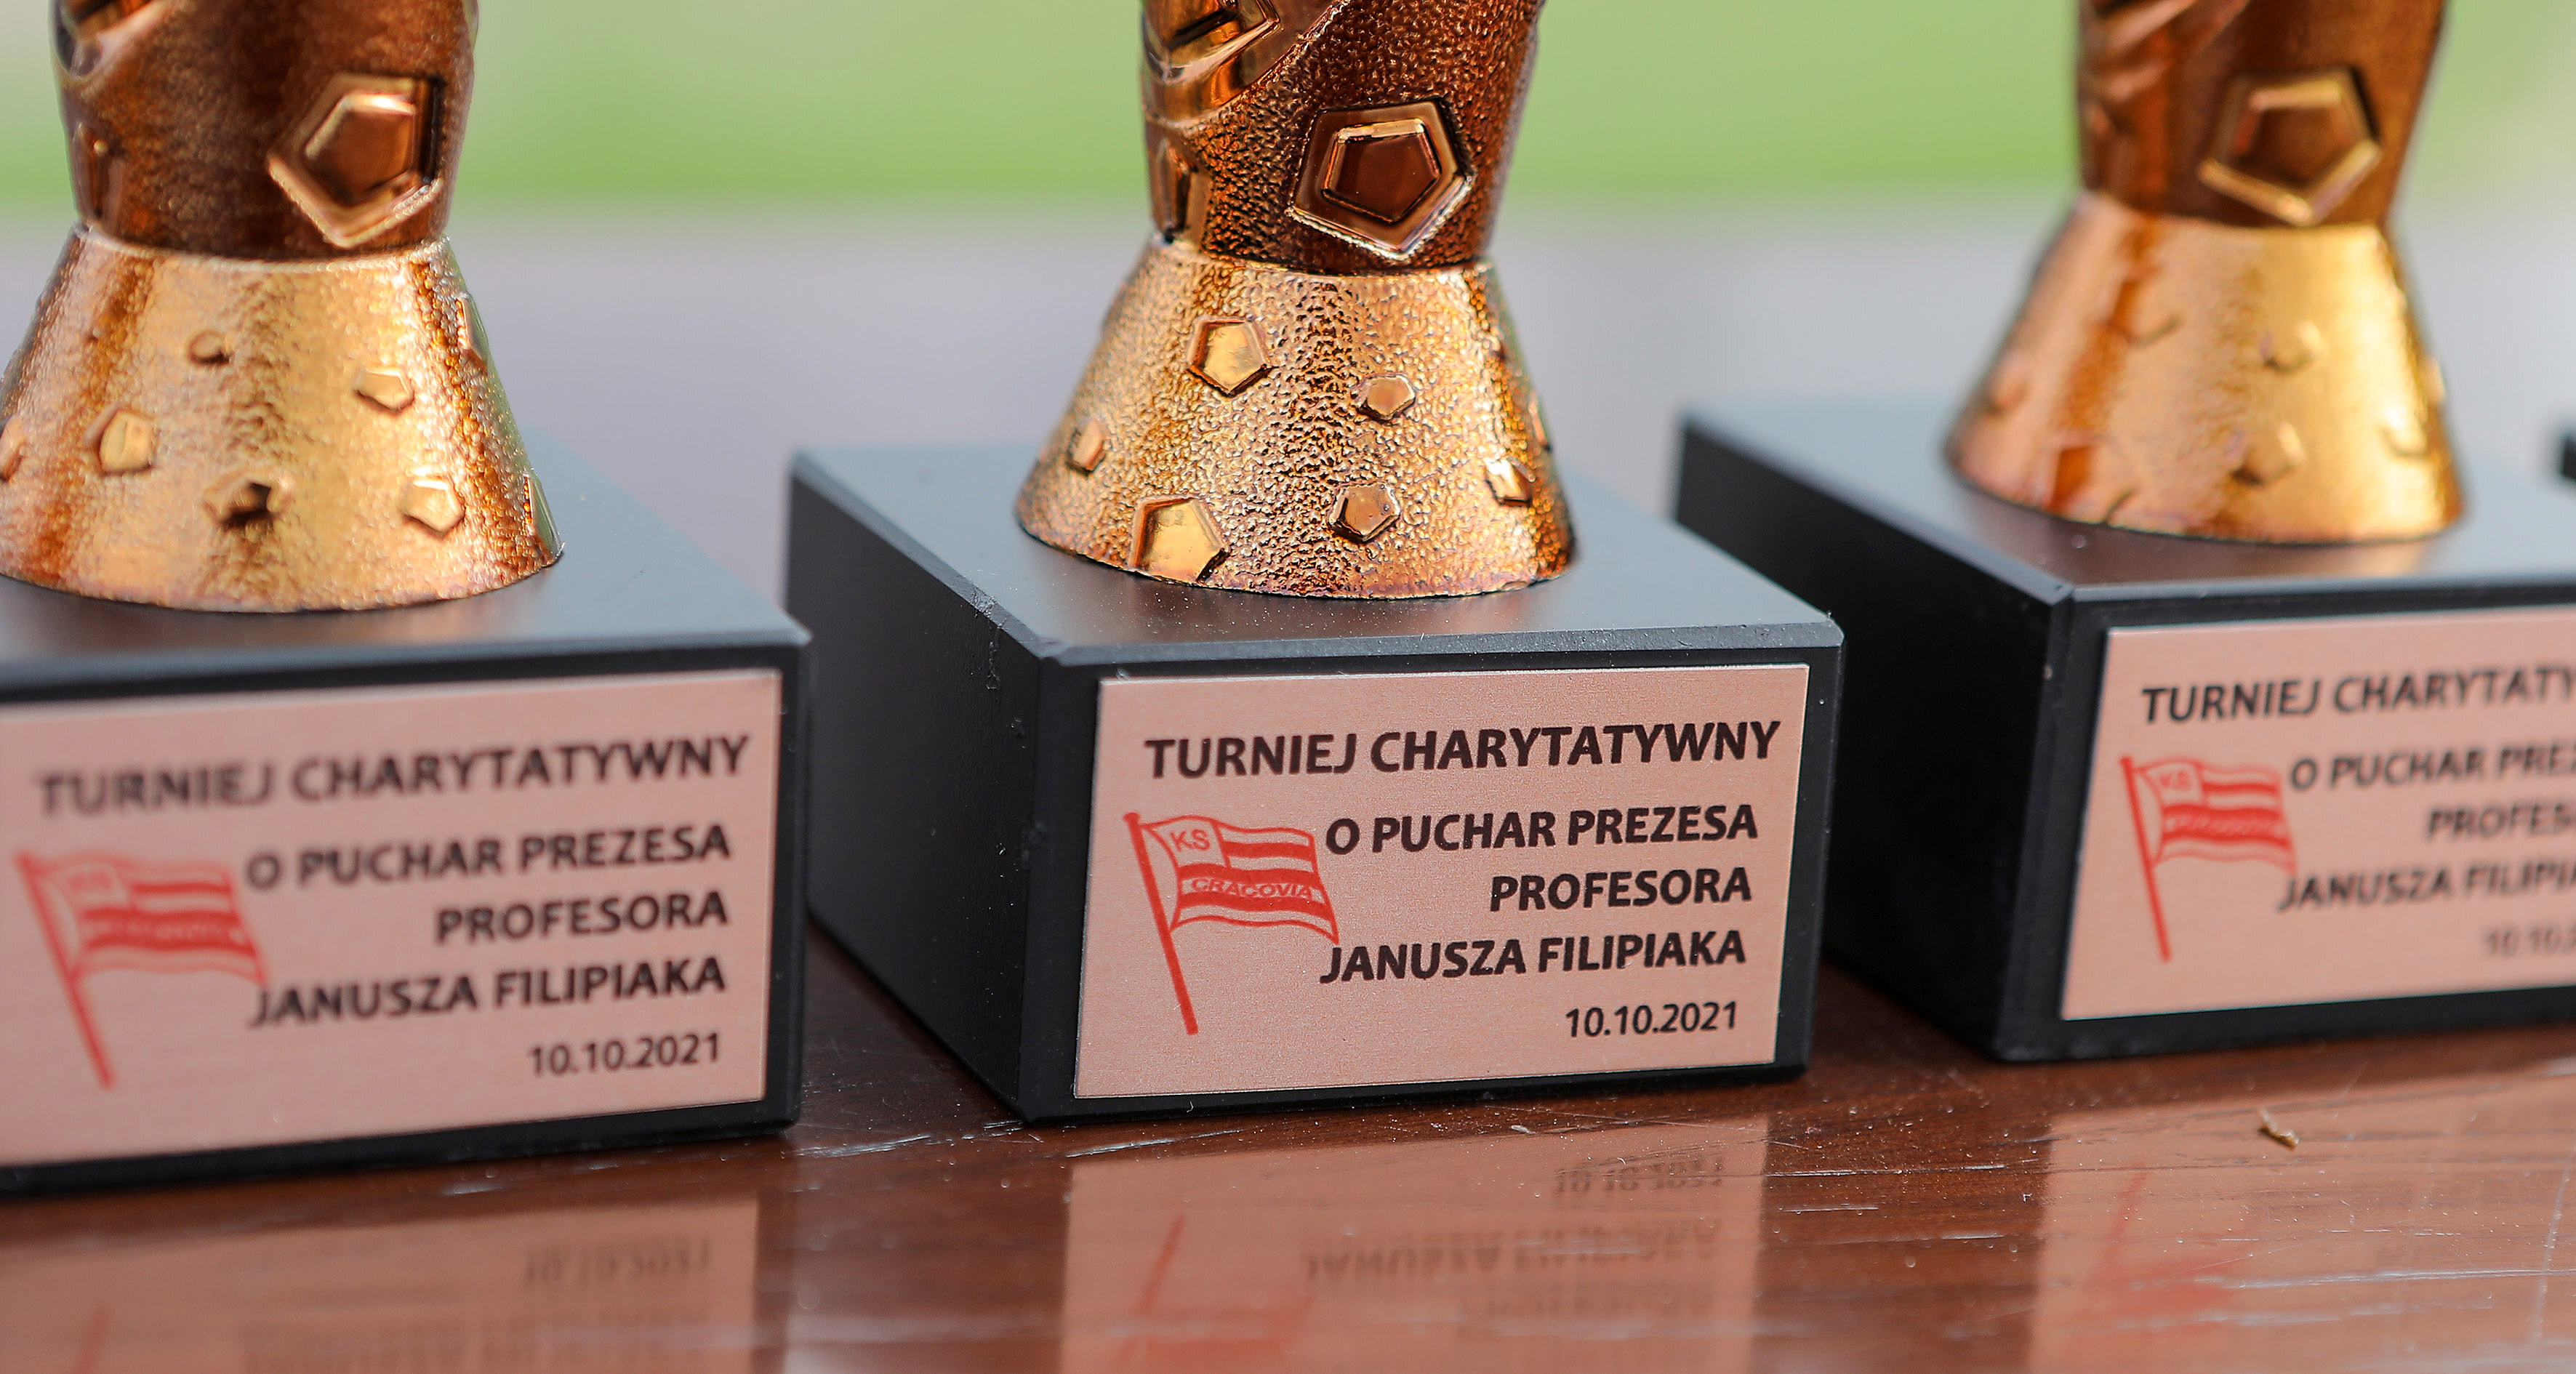 Za nami Turniej Charytatywny o Puchar Prezesa Profesora Janusza Filipiaka